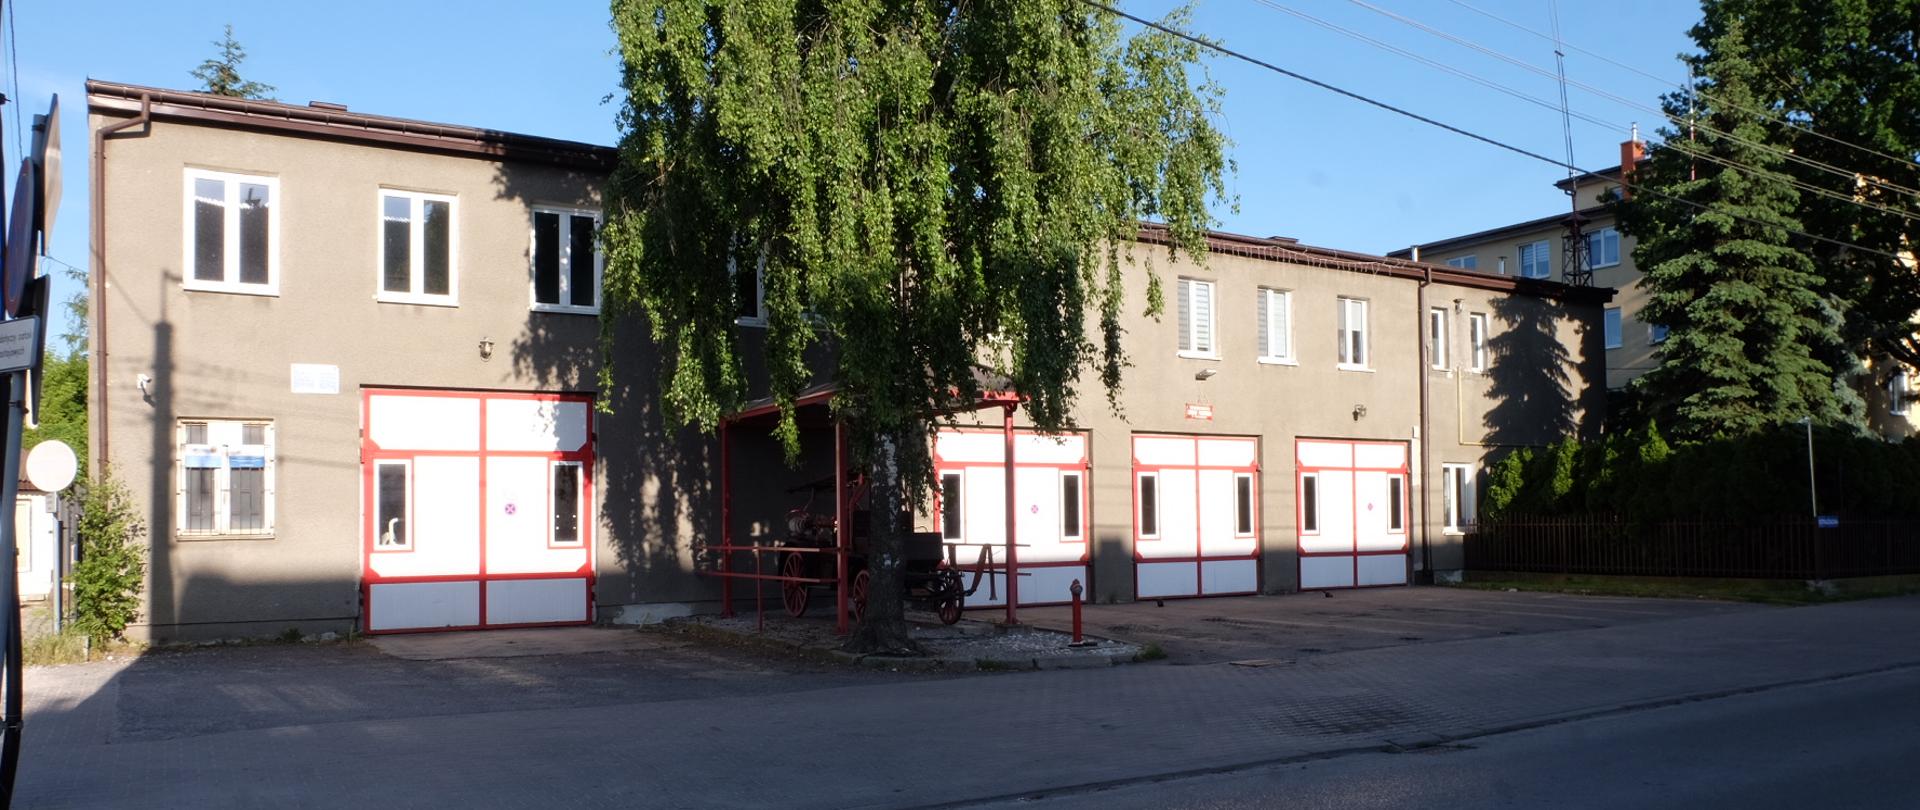 Front budynku OSP w Ożarowie Mazowieckim